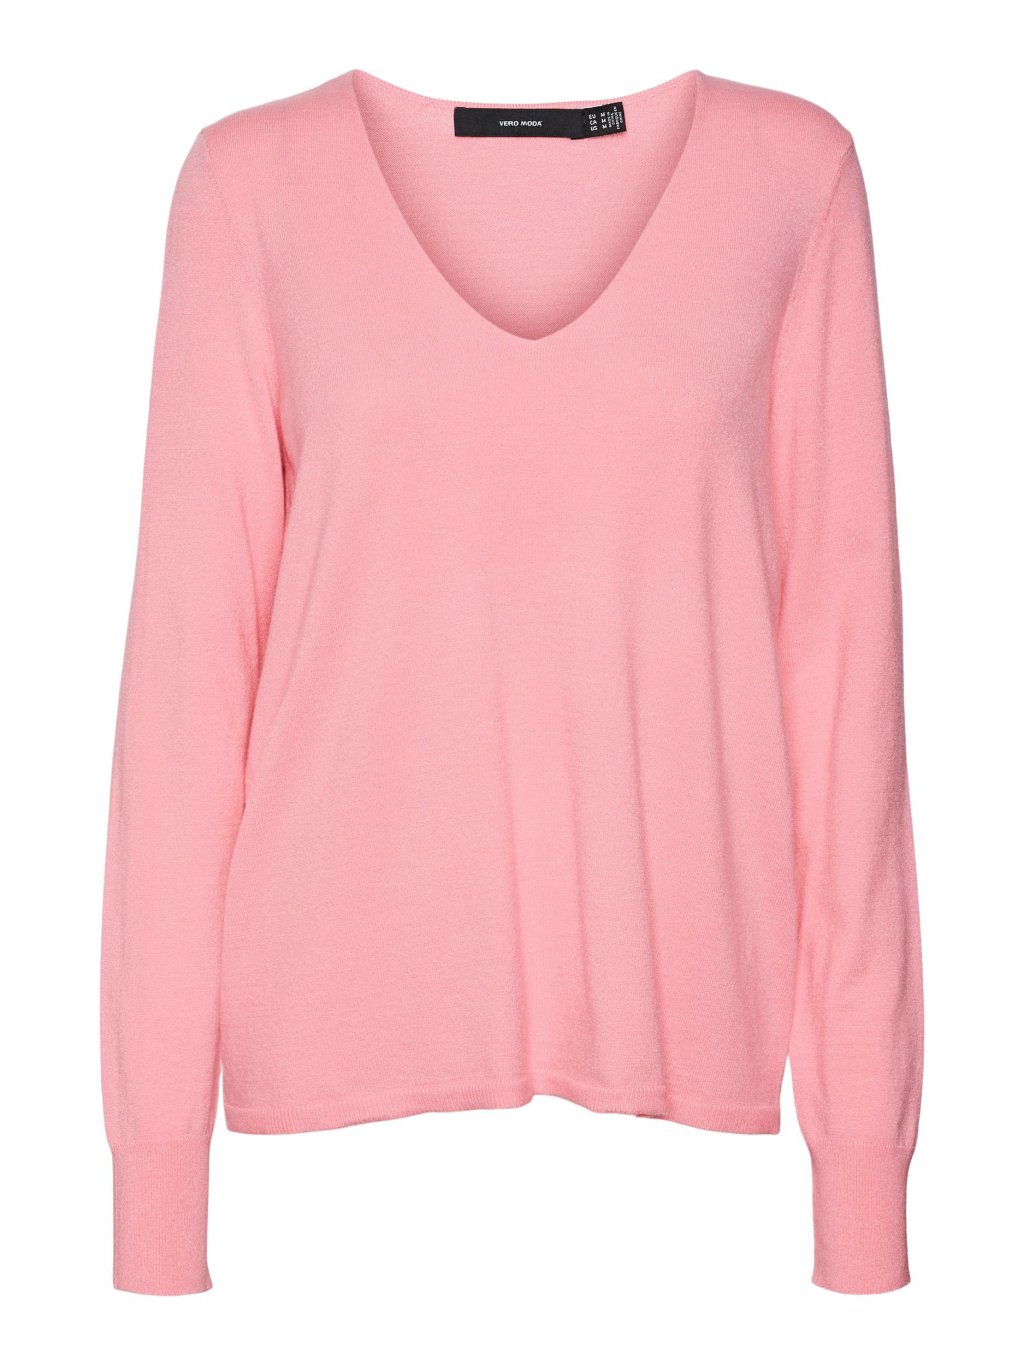 Vero Moda dámský svetr Happiness růžový - STORMfashion